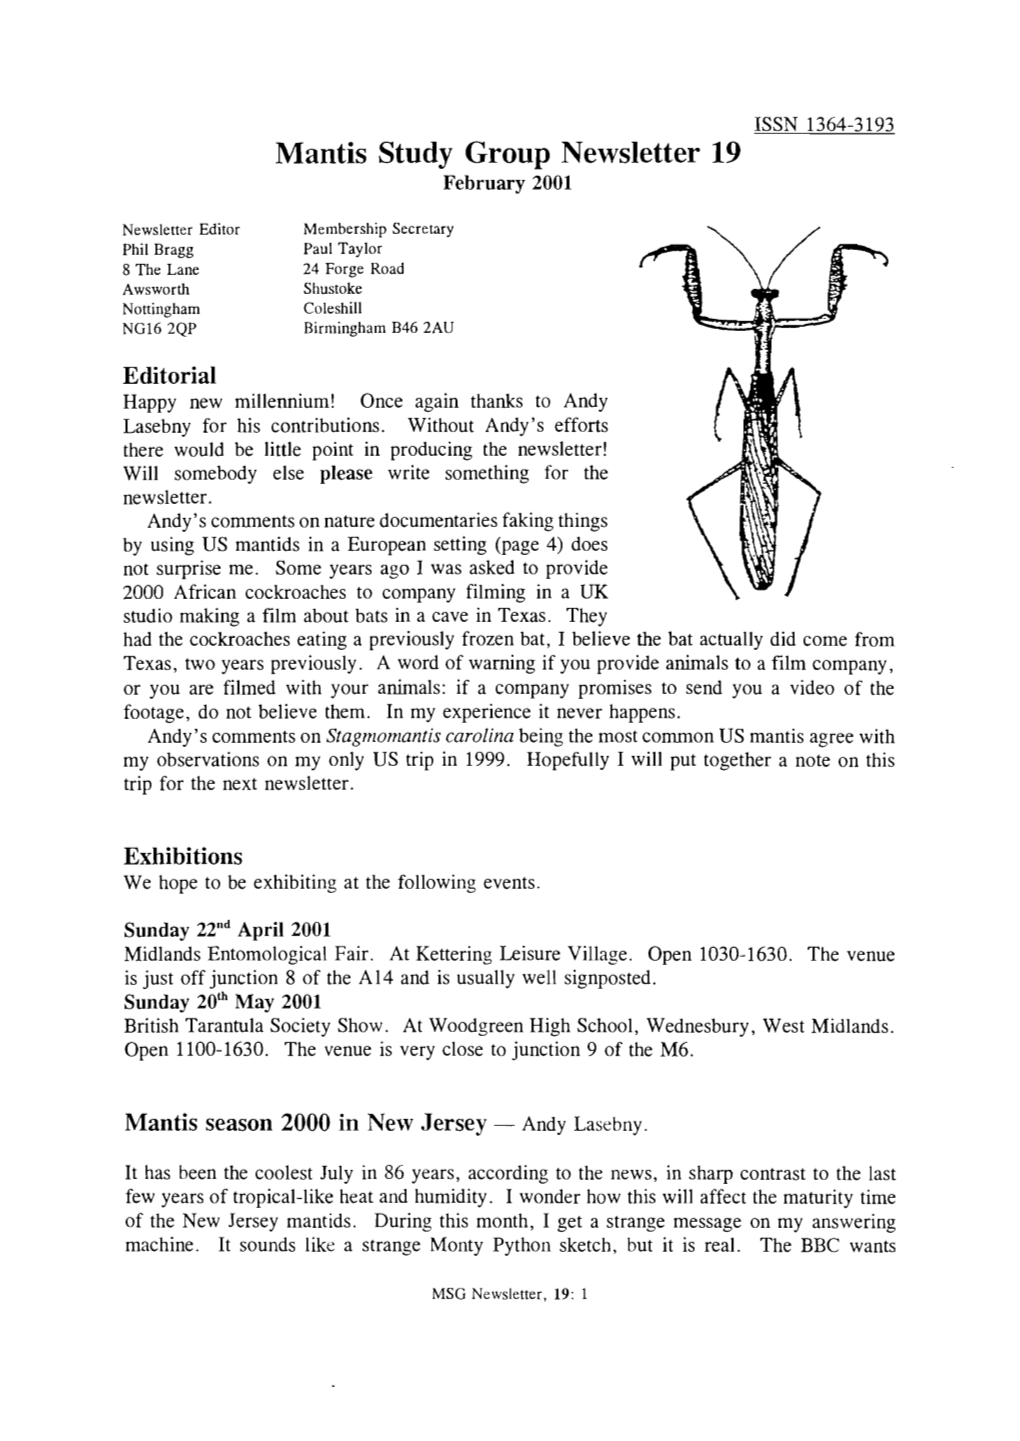 Mantis Study Group Newsletter, 19 (February 2001)